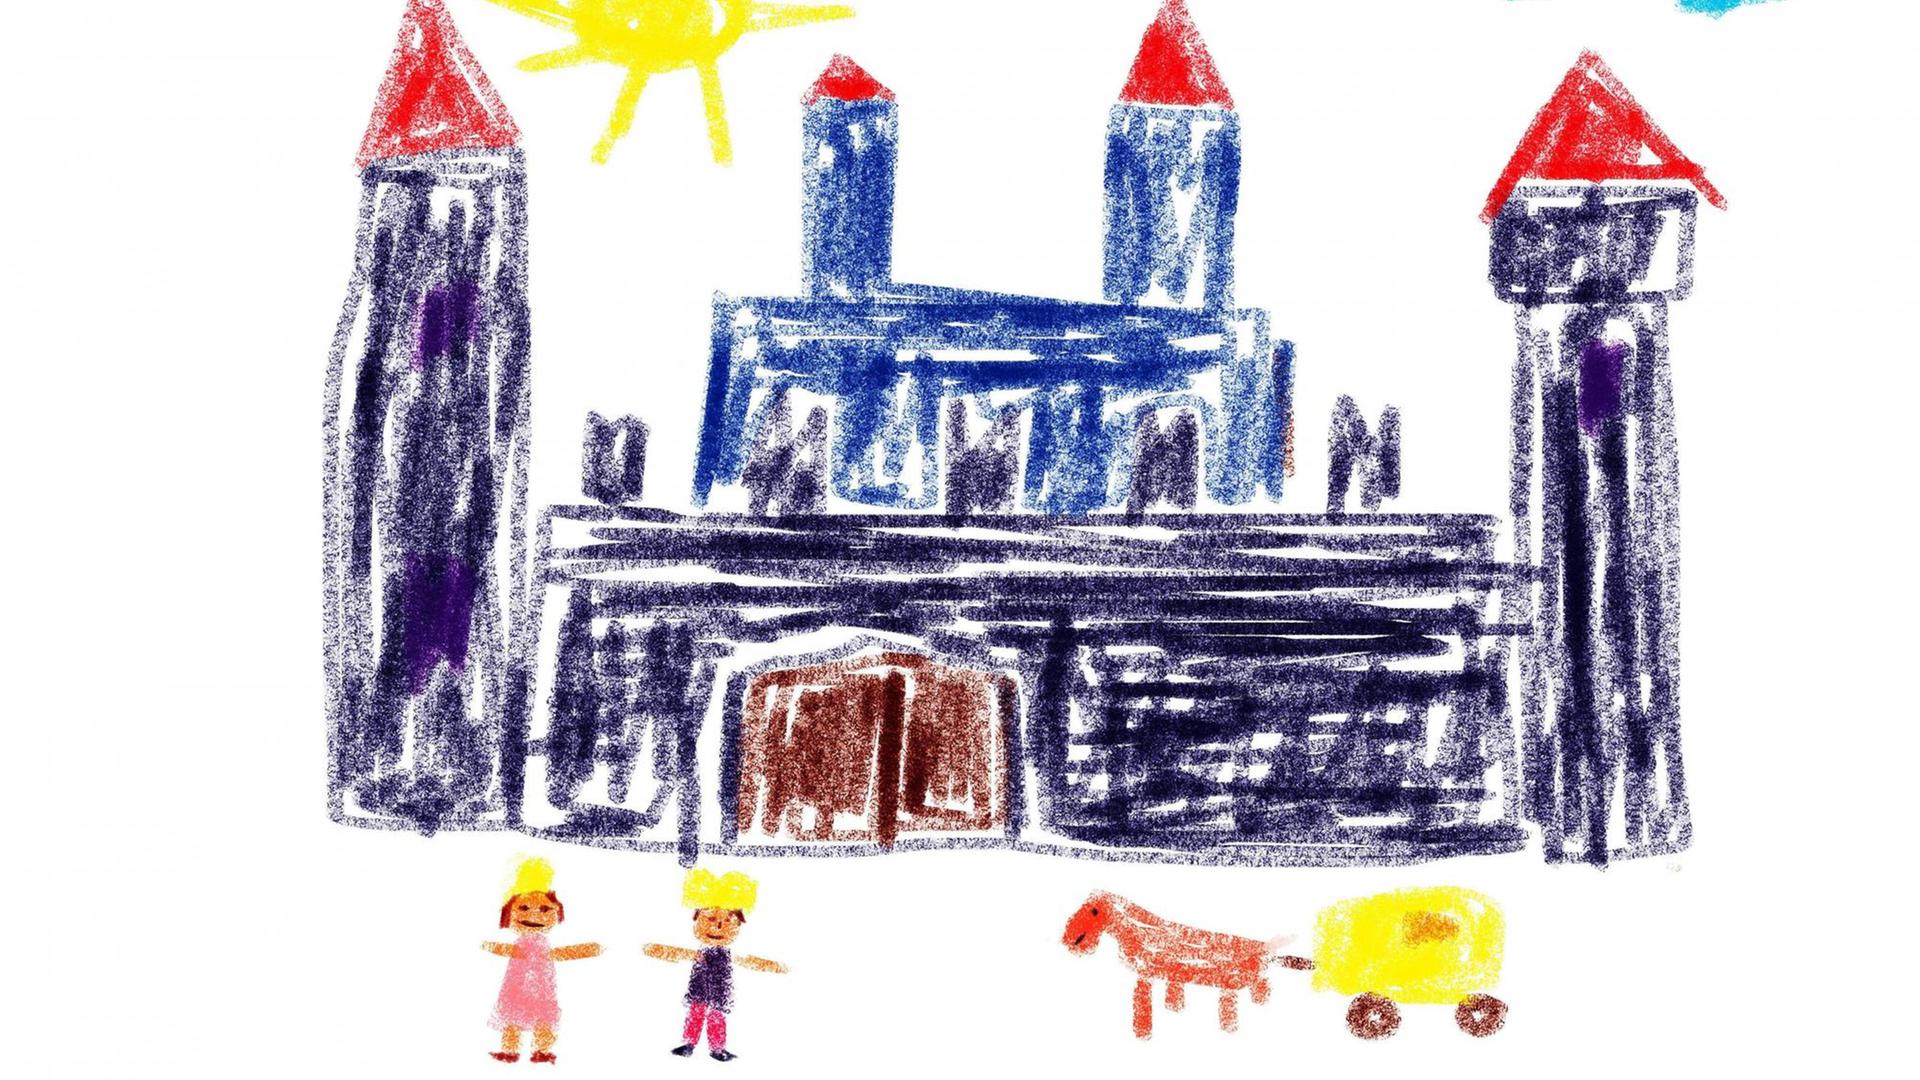 Kinderzeichnung: Prinz und Prinzessin vor ihrem Schloss.